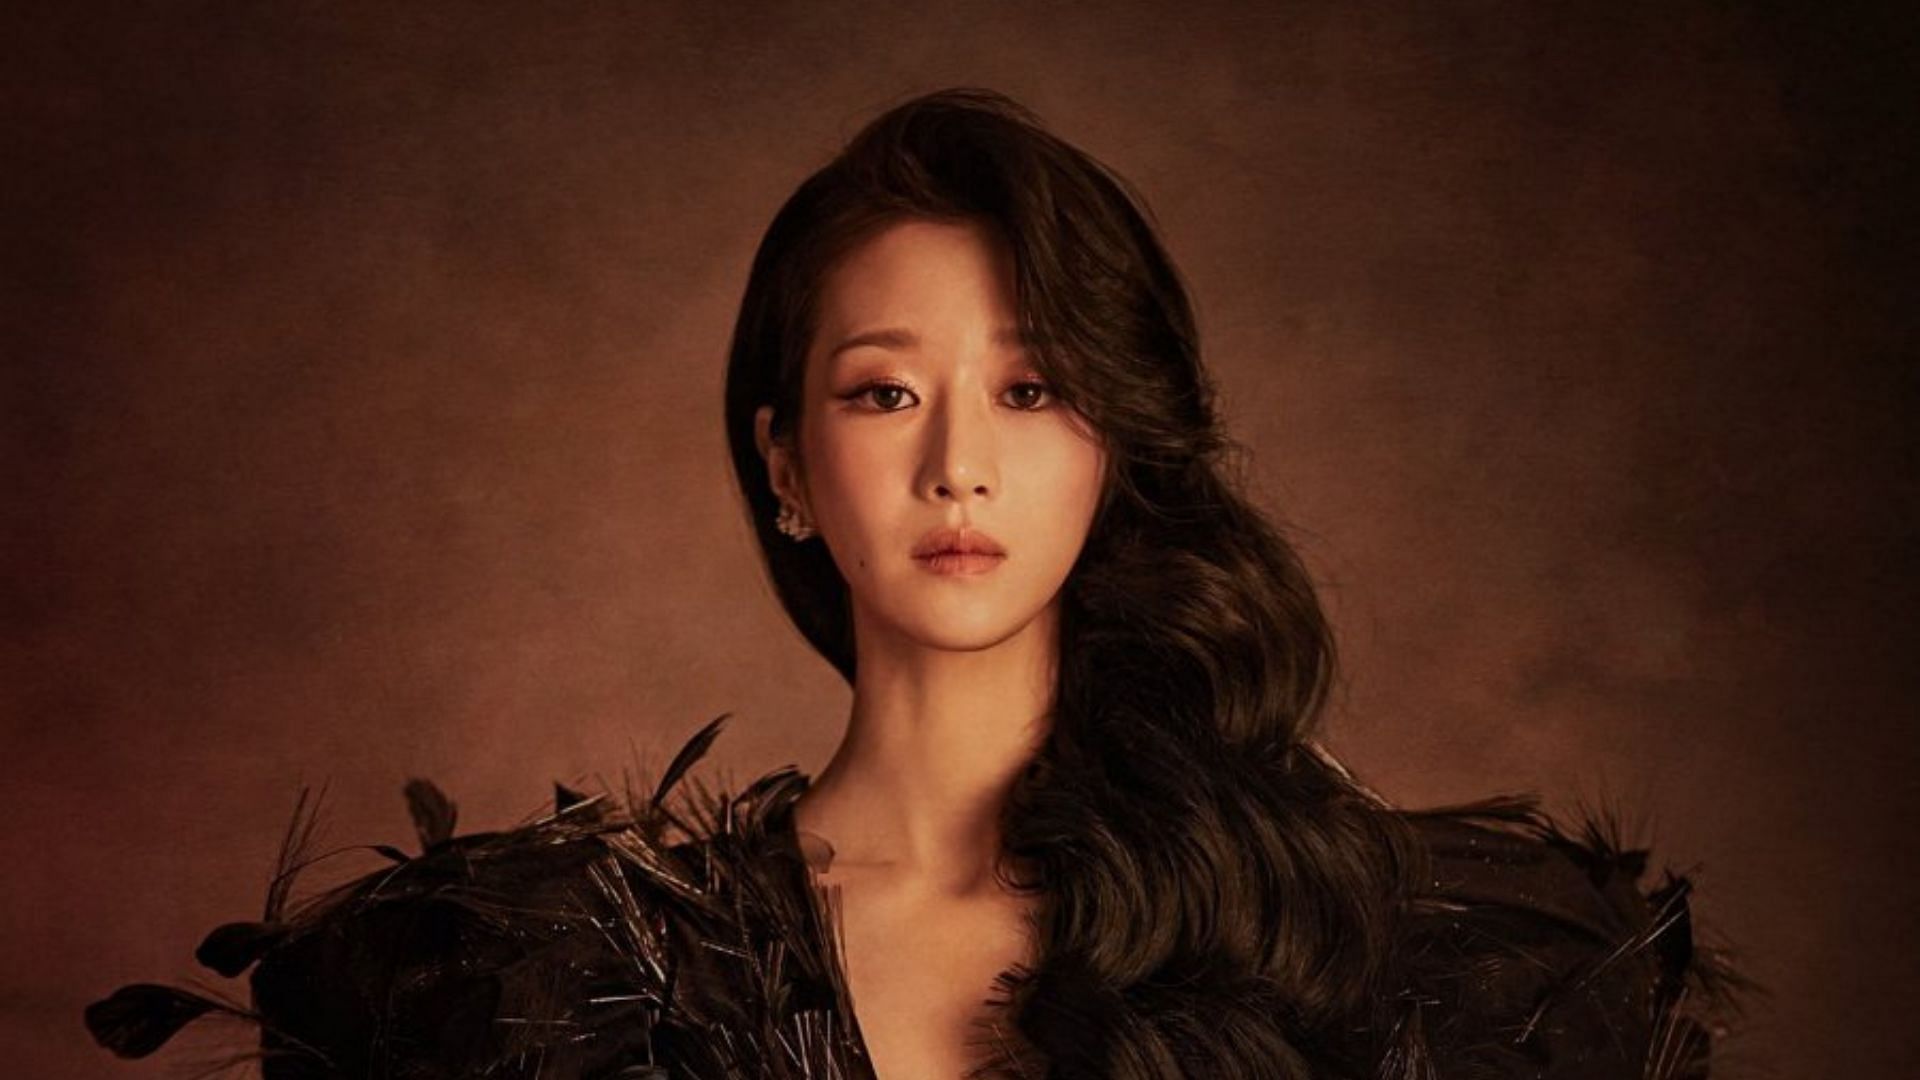 A still of Seo Ye-ji in Eve poster (Image via tvn_drama/Instagram)